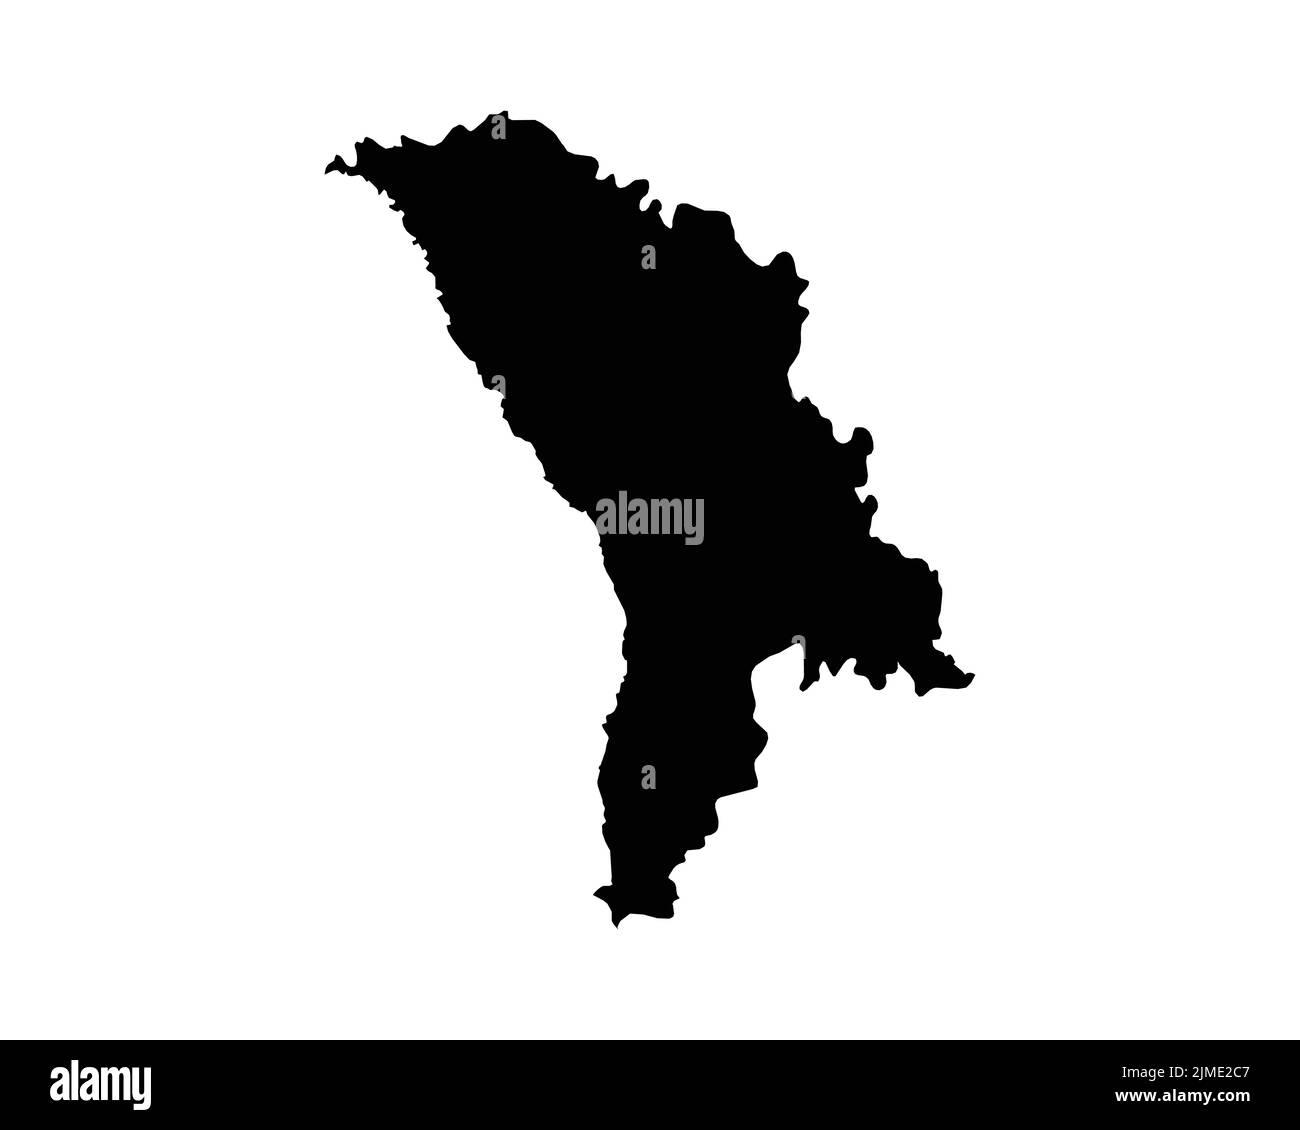 Moldawien-Karte. Moldauische Landkarte. Schwarz-Weiß National Nation Gliederung Geographie Grenze Grenzform Territorium Vektor Illustration EPS Clipart Stock Vektor